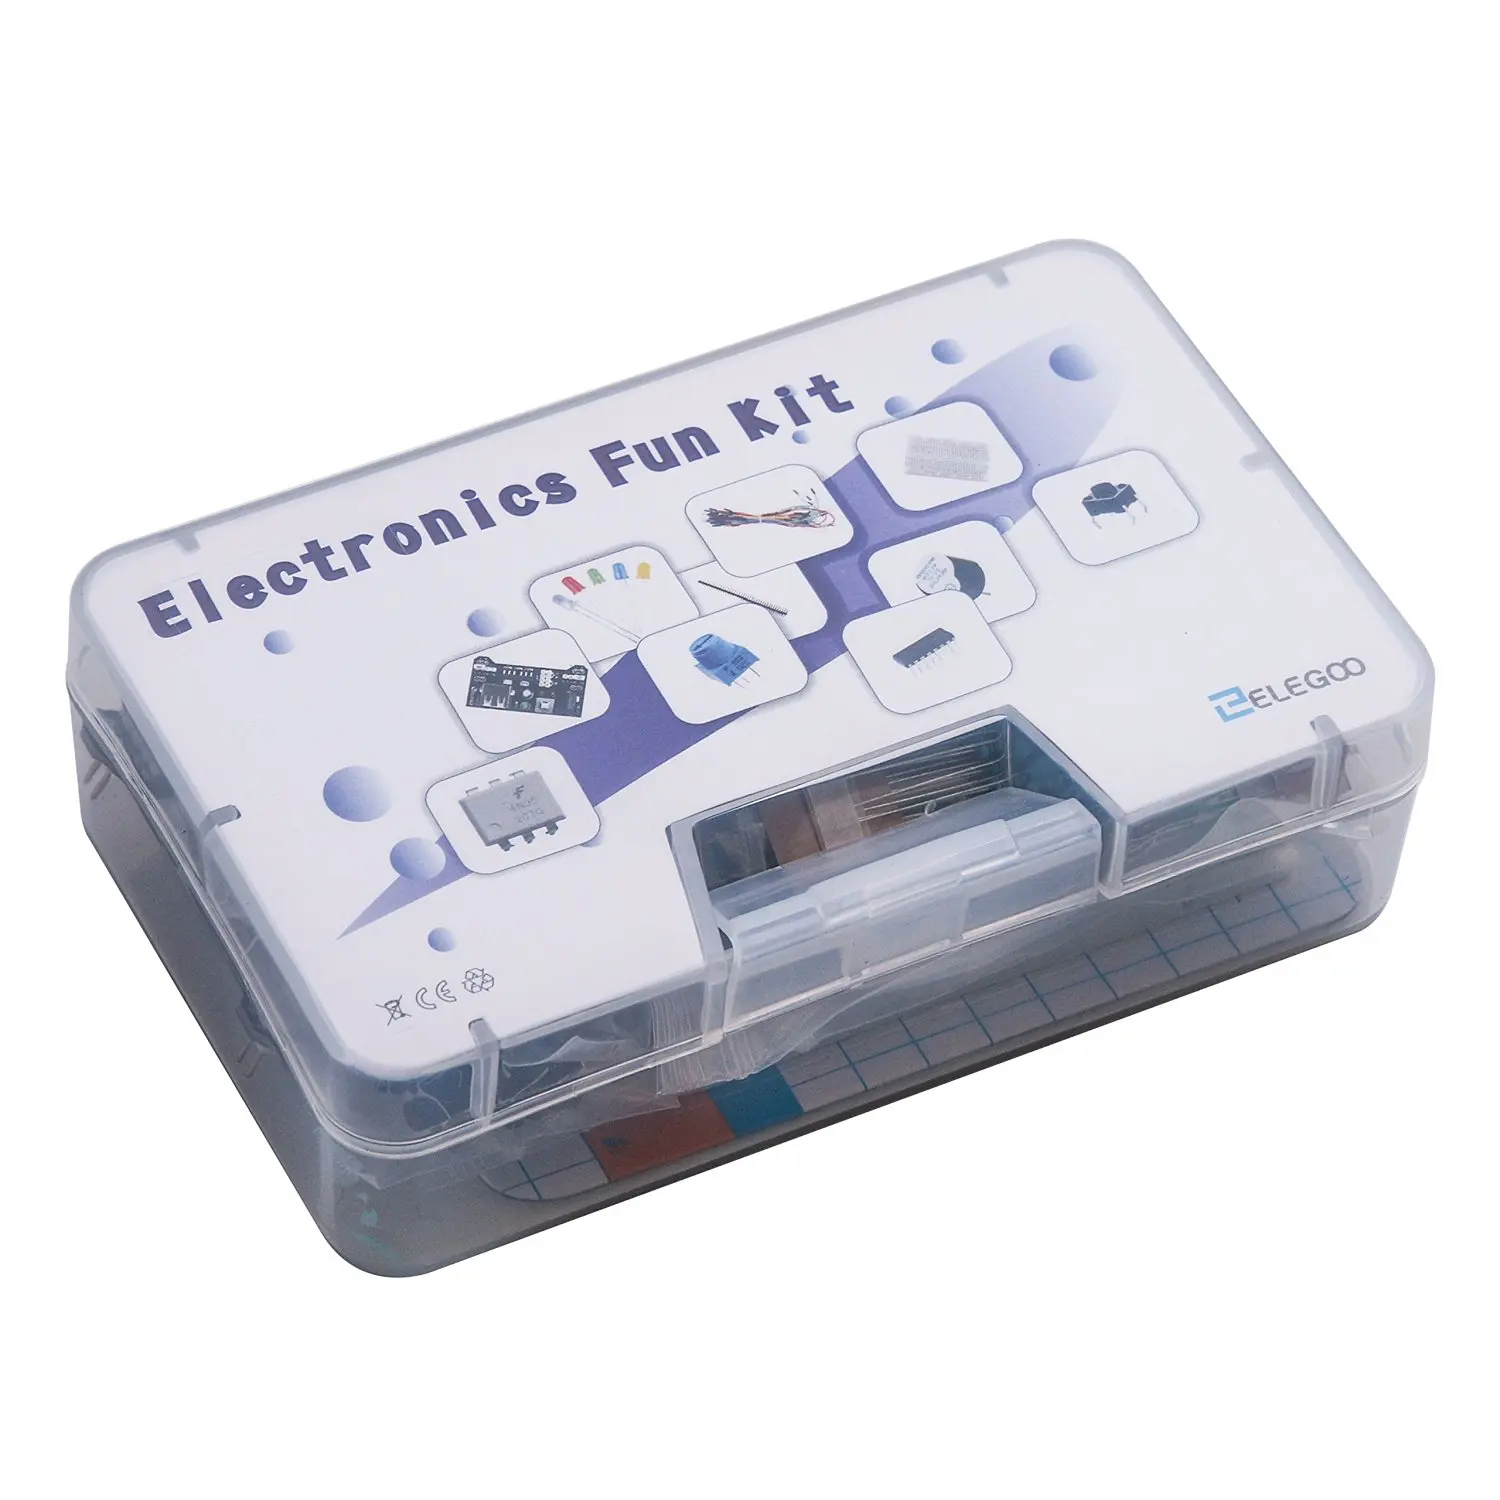 Электронный Забавный комплект с макетной резистор, конденсатор, светодиодный, потенциометр 235 элементов для arduino